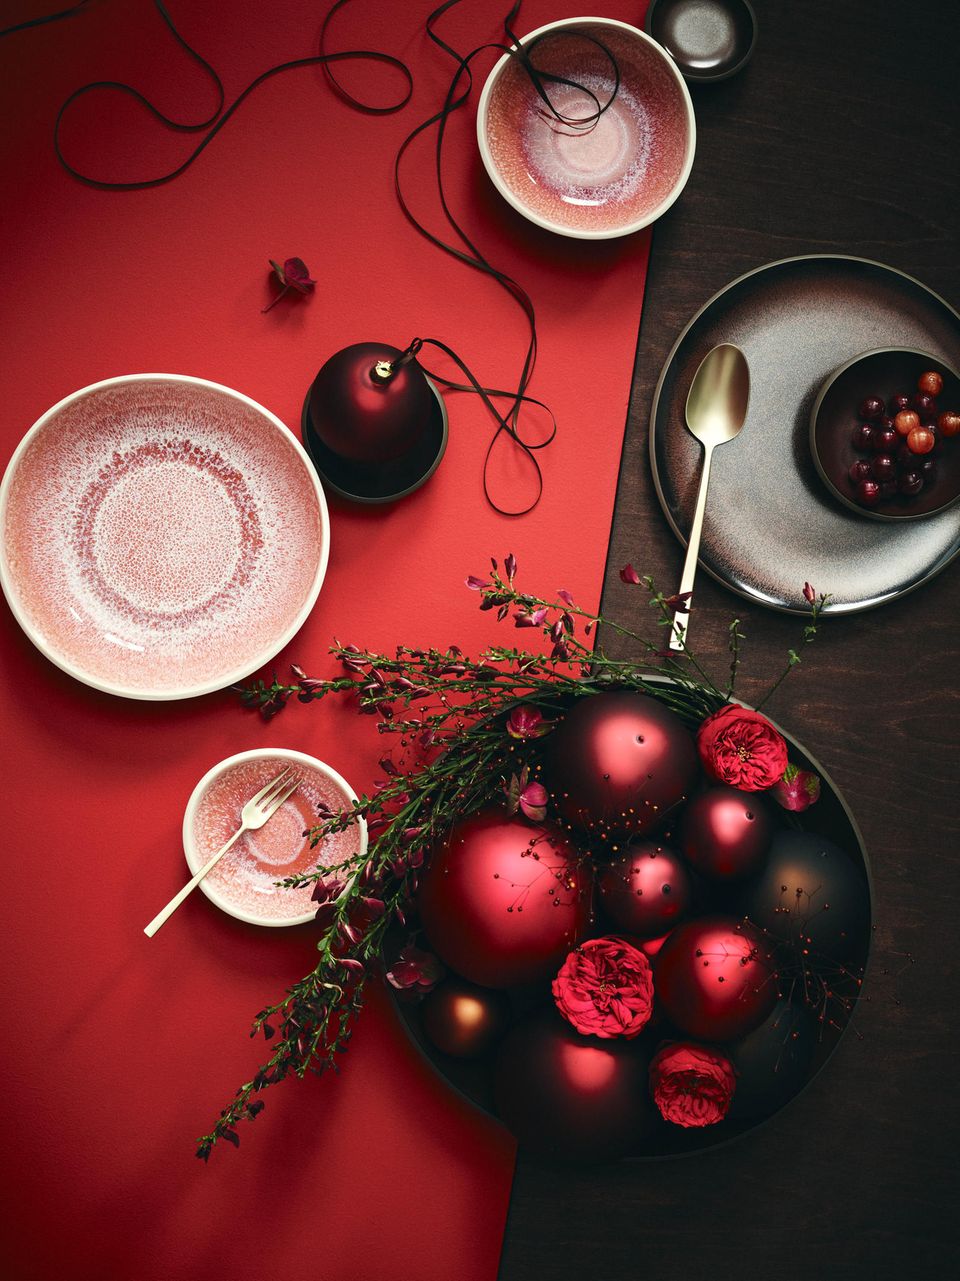 Rosa gesprenkeltes Geschirr auf rubinrotem Tischläufer mit Gesteck aus granatapfelfarbenen Weihnachtskugeln